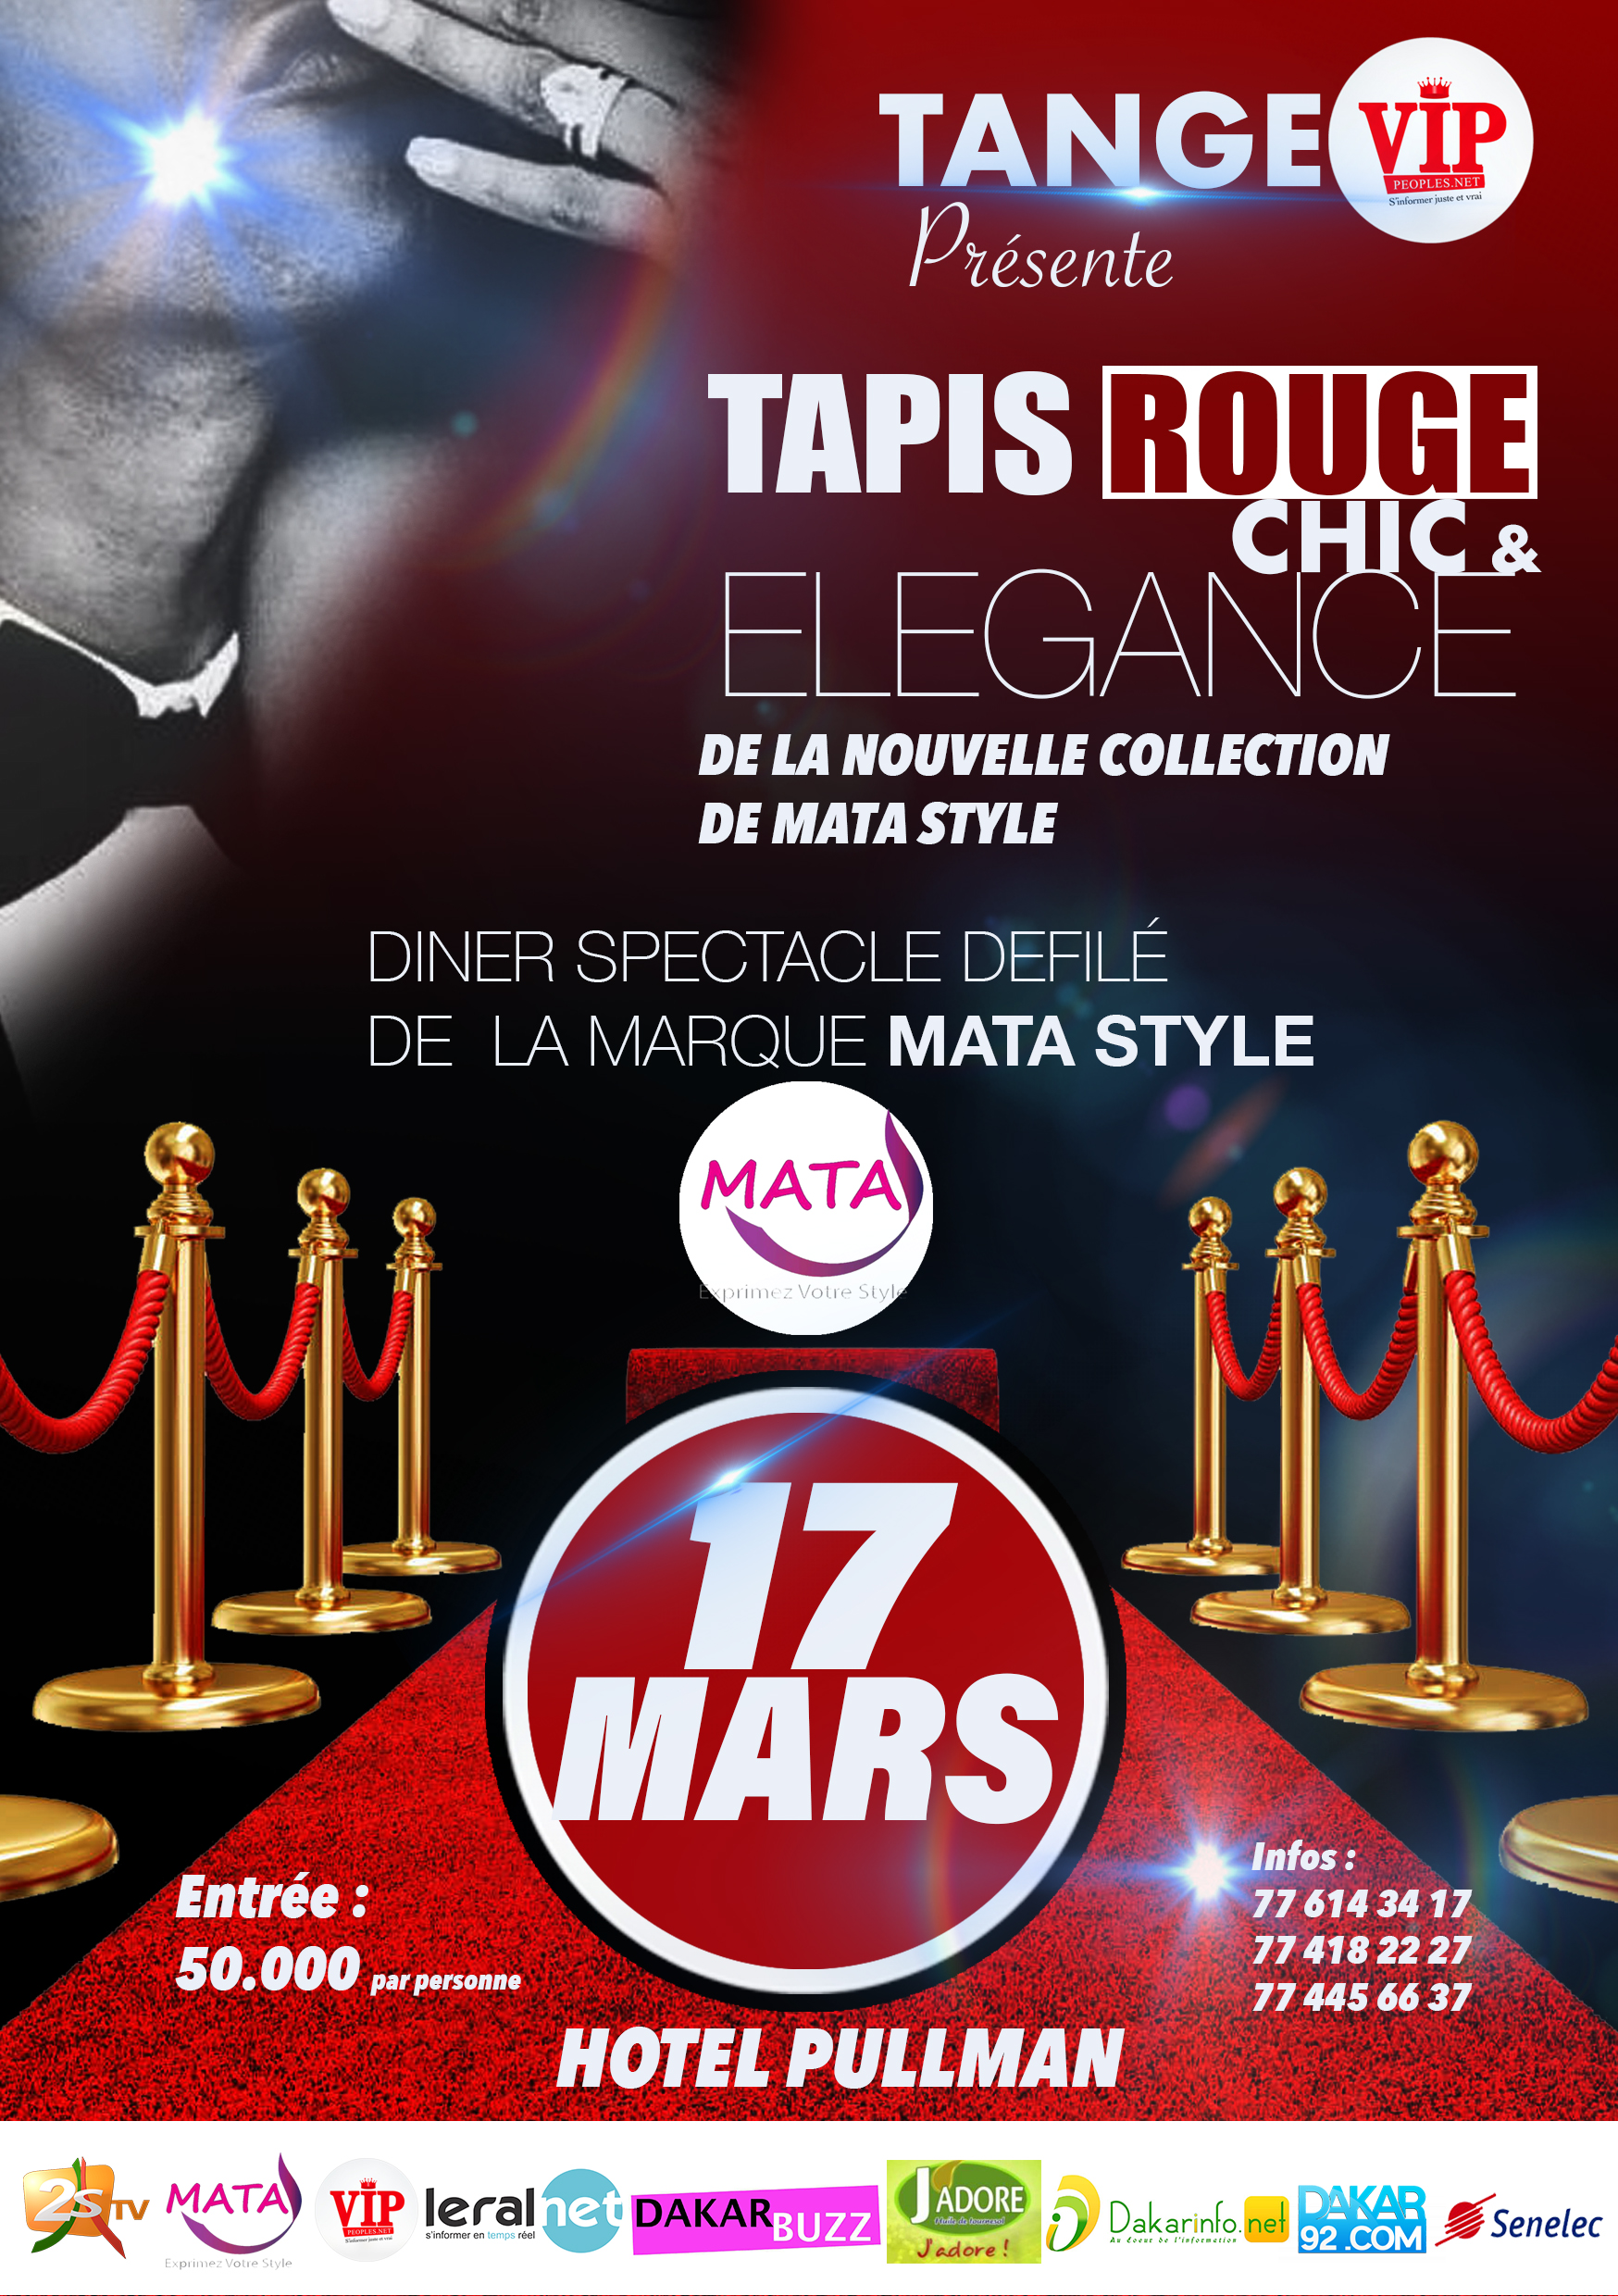 TANGE VIPEOPLES présente le Gala Chic & Elégance TAPIS ROUGE de la nouvelle collection de la marque Mata Style le 17 Mars à L'Hotel Pullman Dakar.